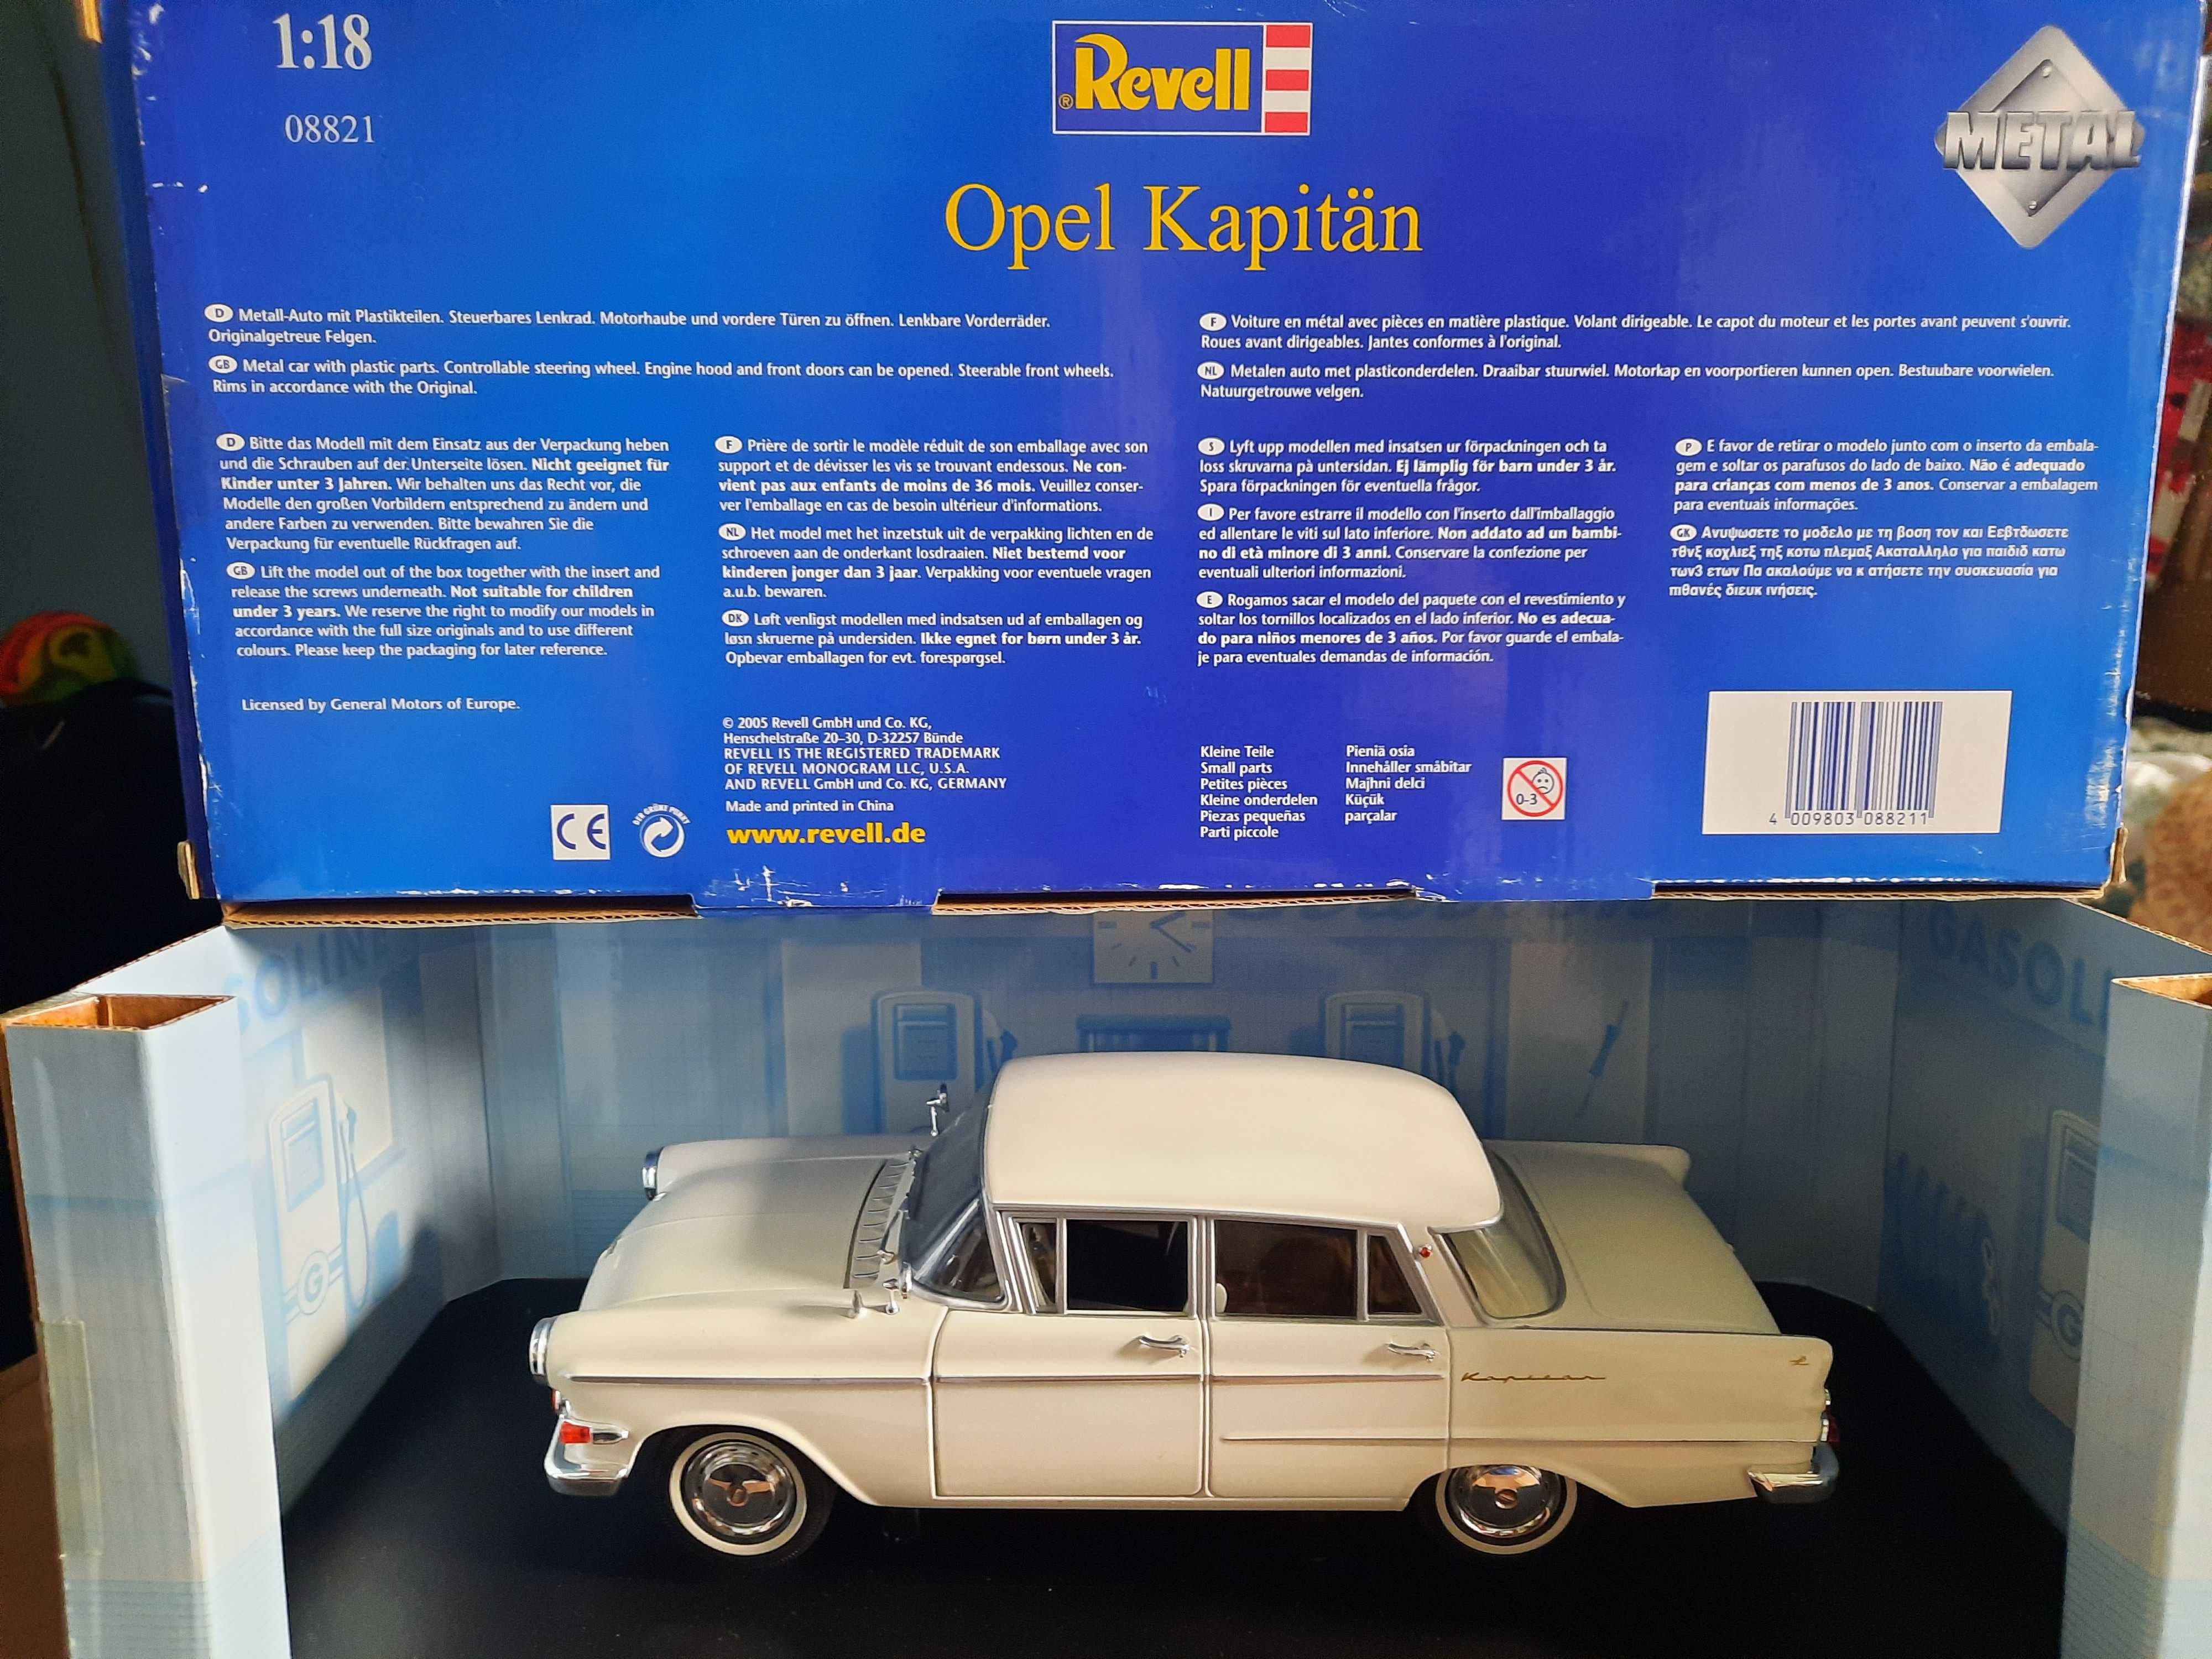 Opel Kapitän, Revell 1/18